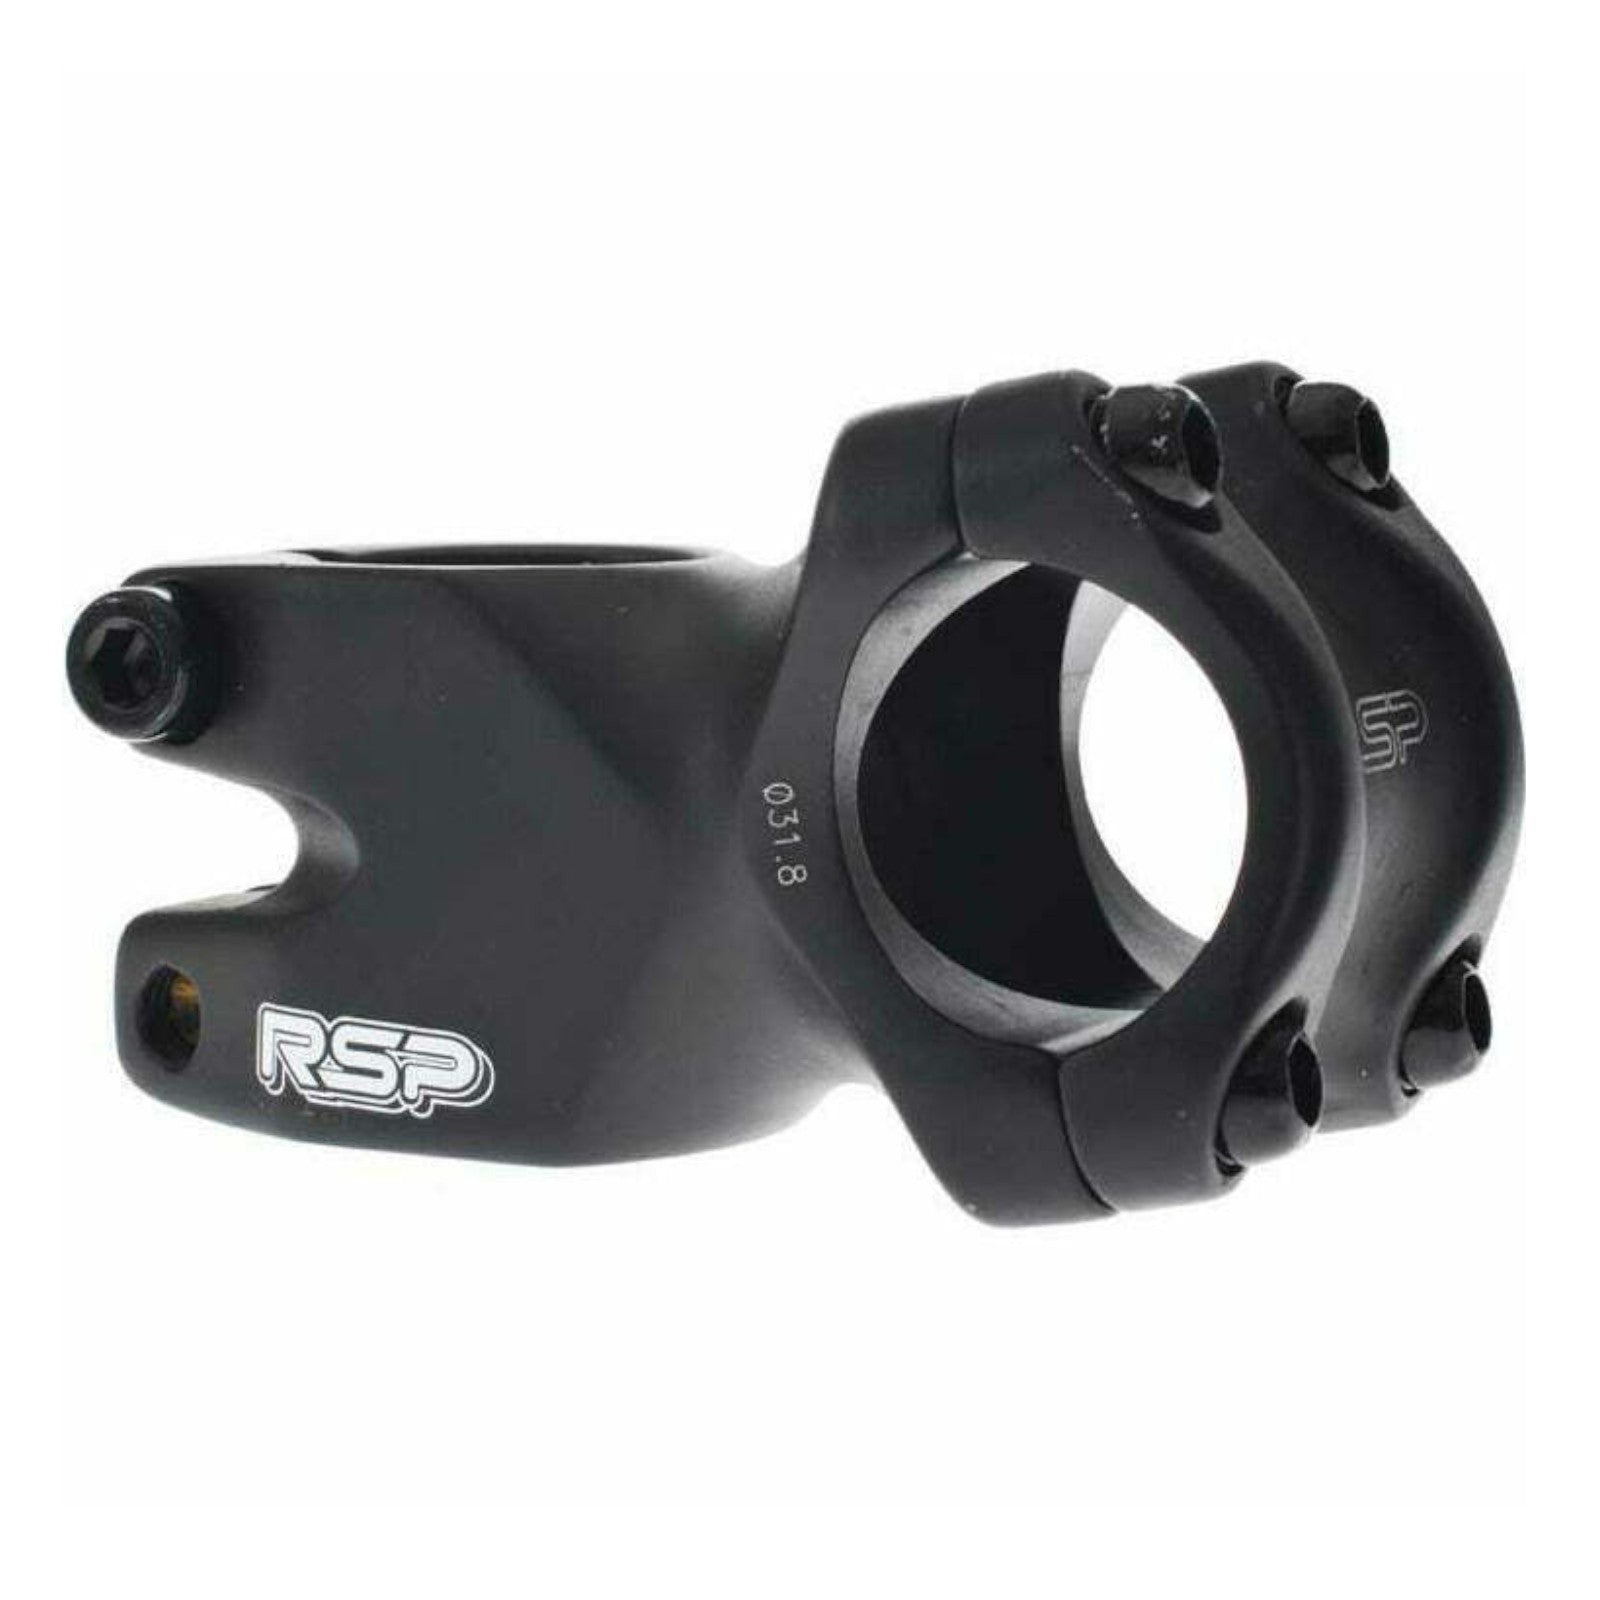 RSP FR Alloy Short 31.8x50mm 31.8mm Bike Stem